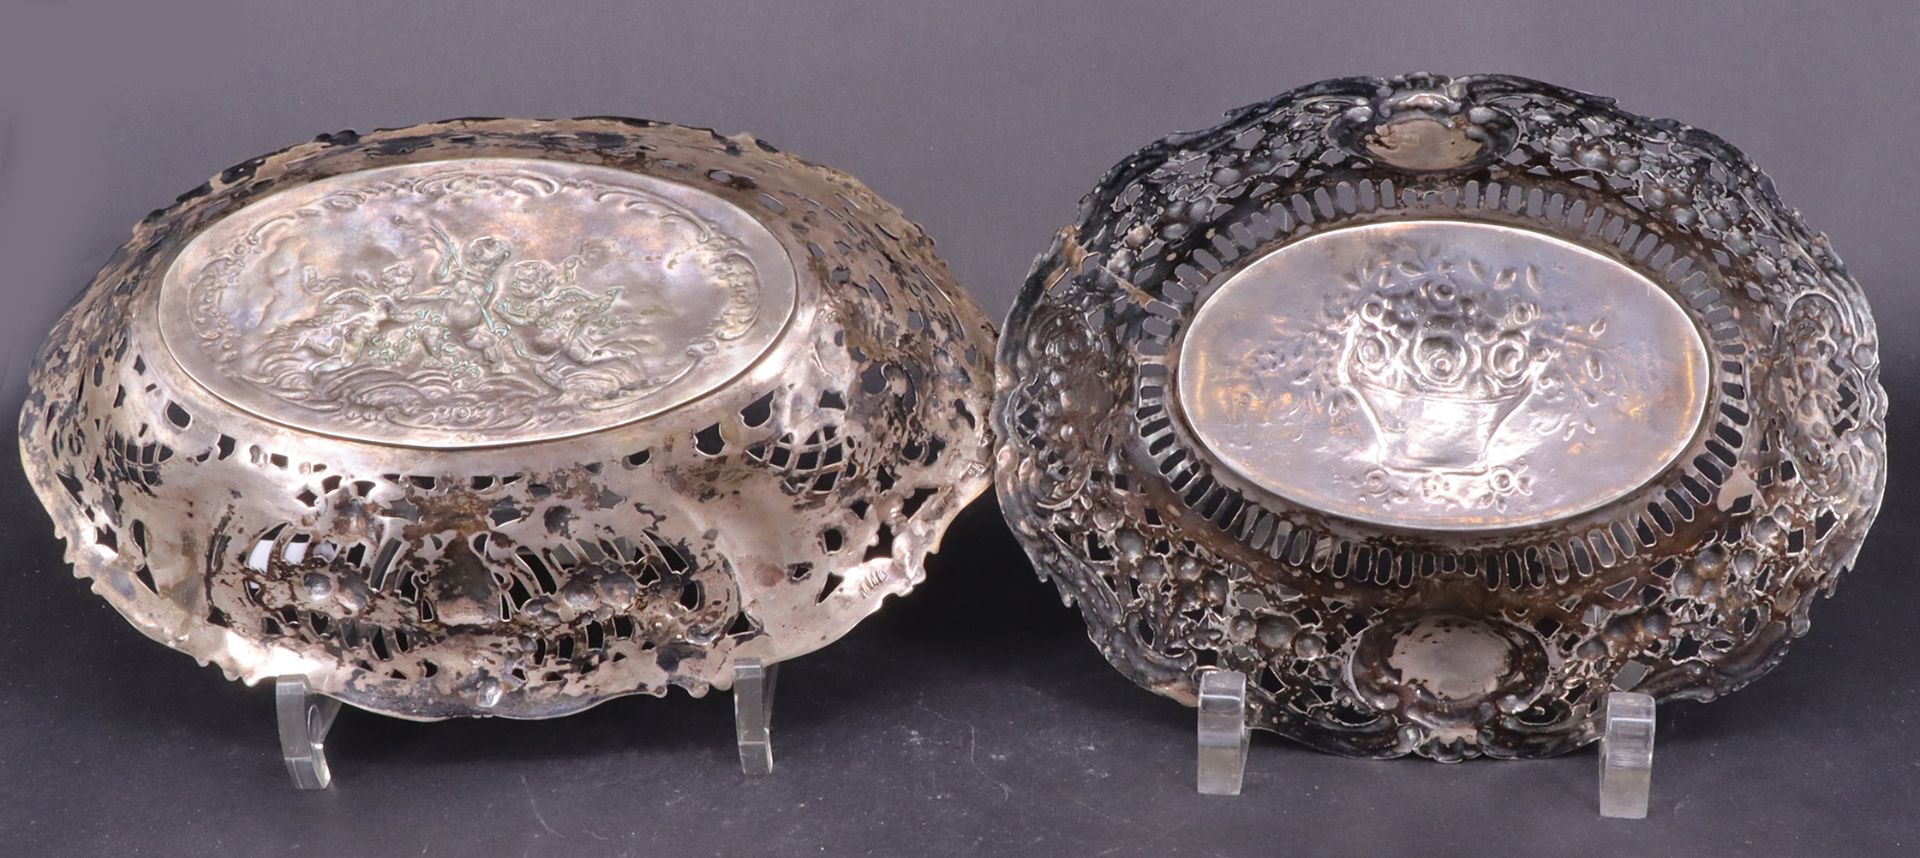 2 Silberschalen, 800er Silber, mit durchbrochen gearbeitetem Rand. Die größere mit Putttenmotiv im - Image 2 of 4